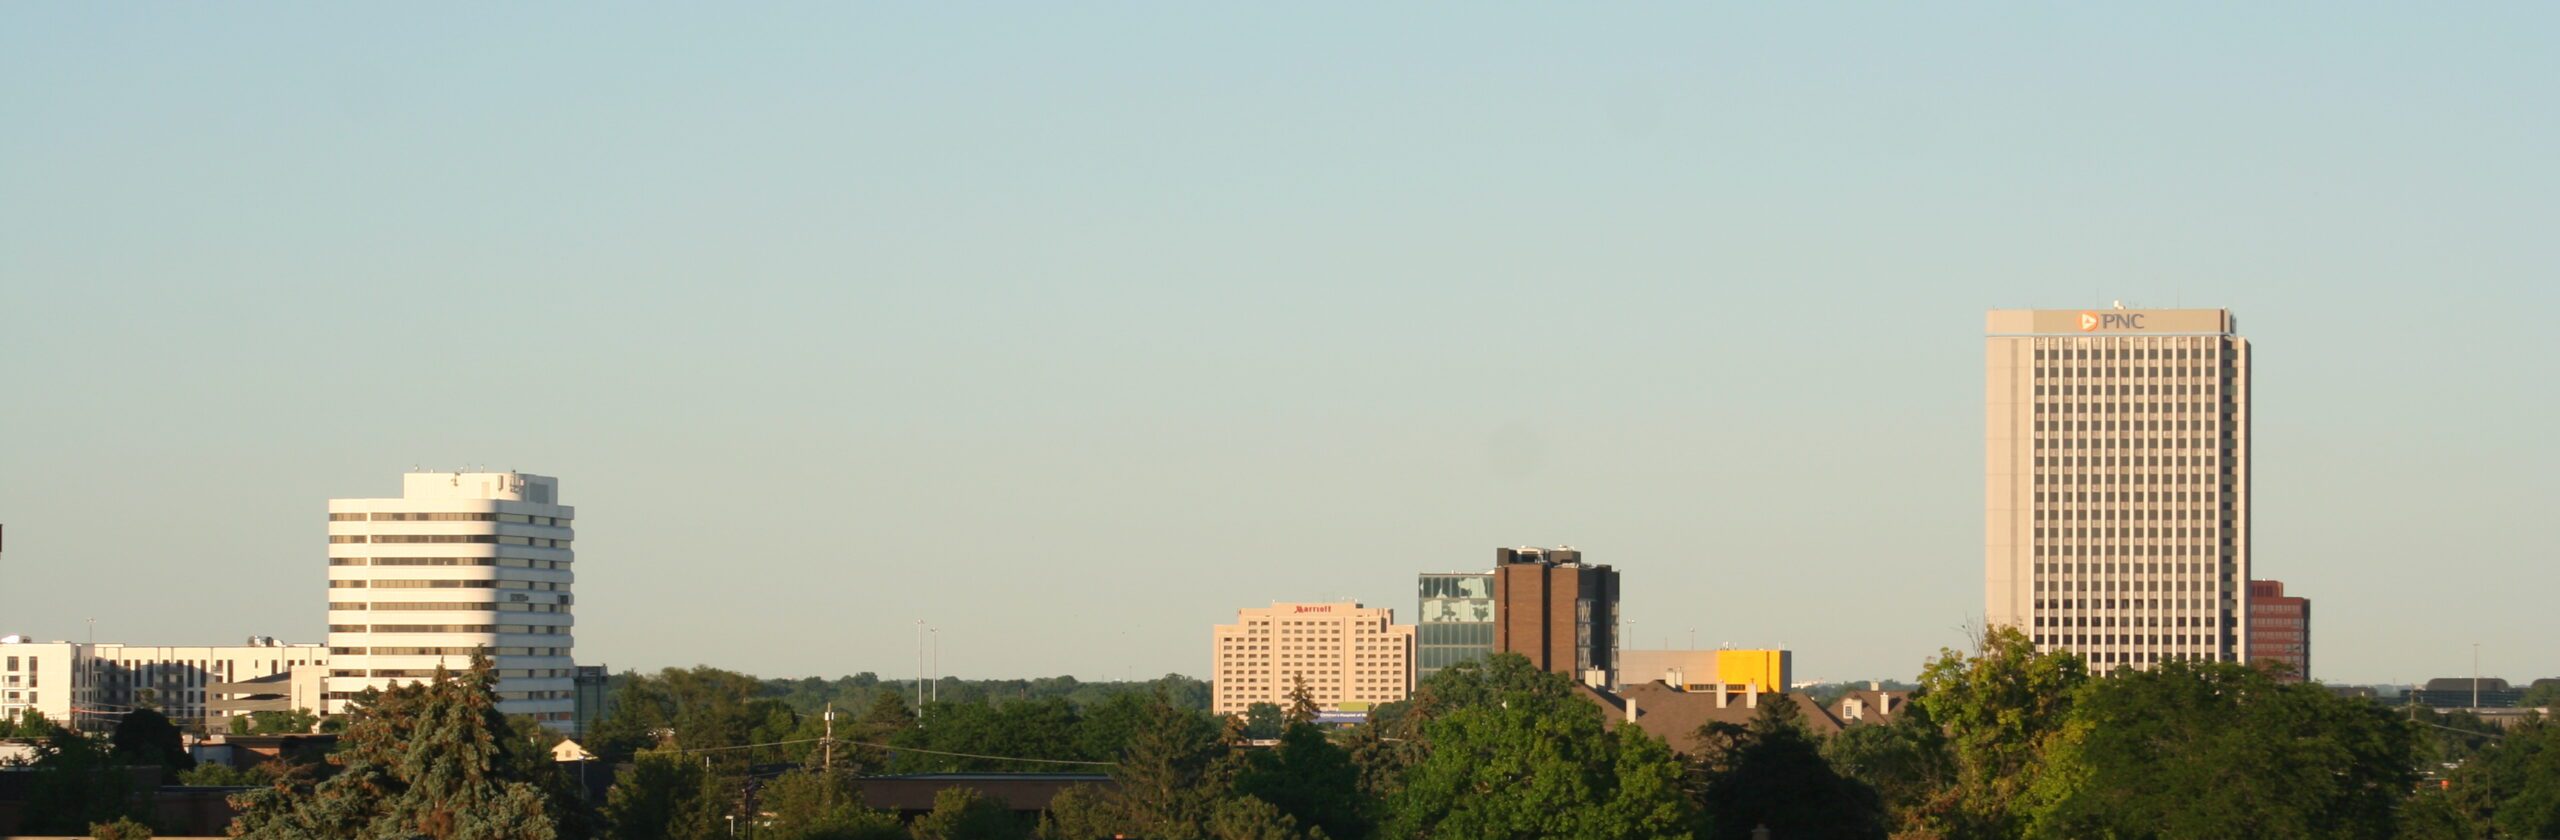 Troy, Michigan Skyline